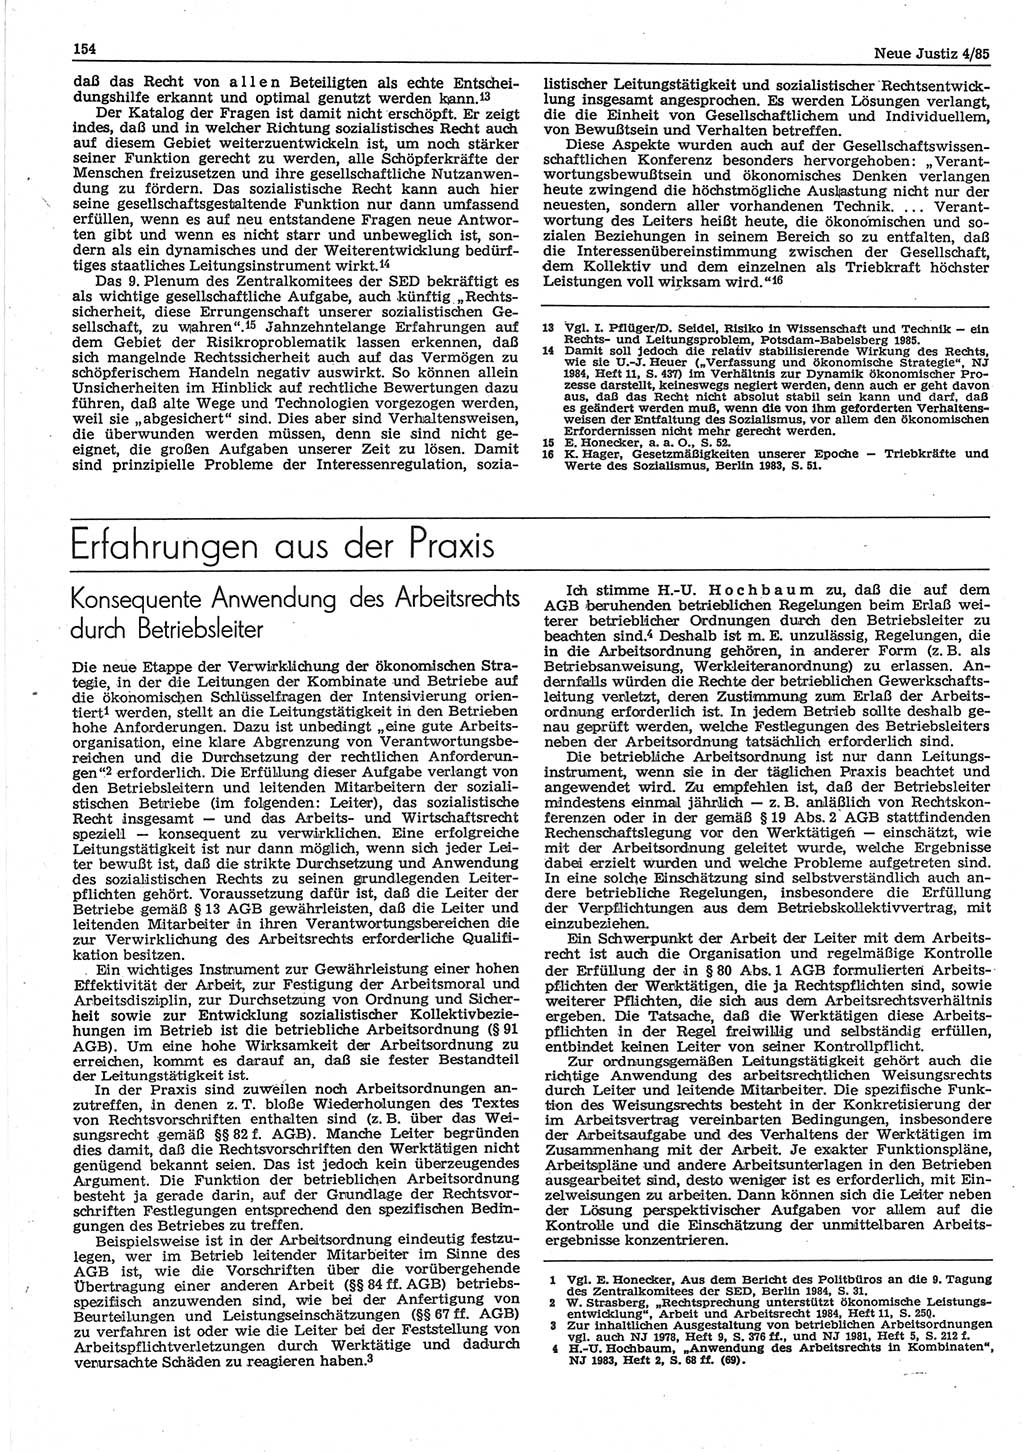 Neue Justiz (NJ), Zeitschrift für sozialistisches Recht und Gesetzlichkeit [Deutsche Demokratische Republik (DDR)], 39. Jahrgang 1985, Seite 154 (NJ DDR 1985, S. 154)